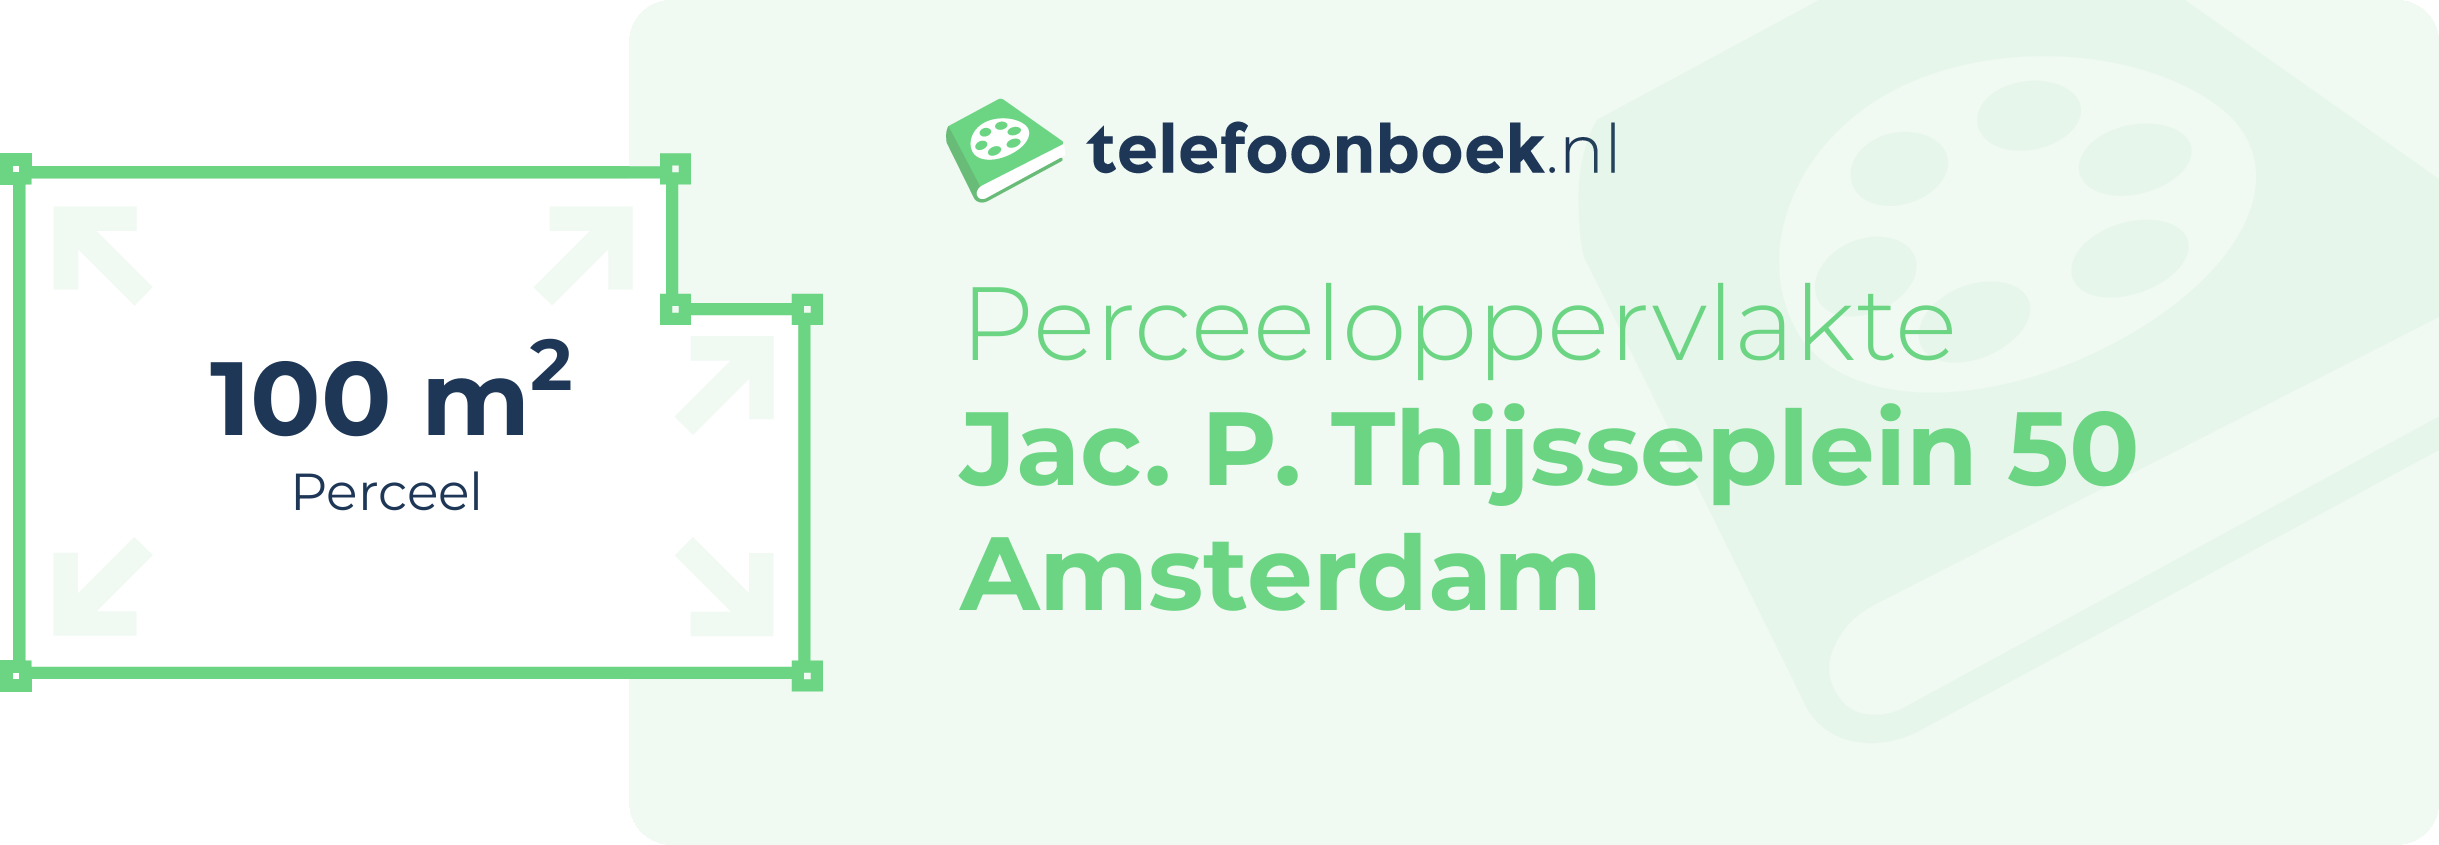 Perceeloppervlakte Jac. P. Thijsseplein 50 Amsterdam